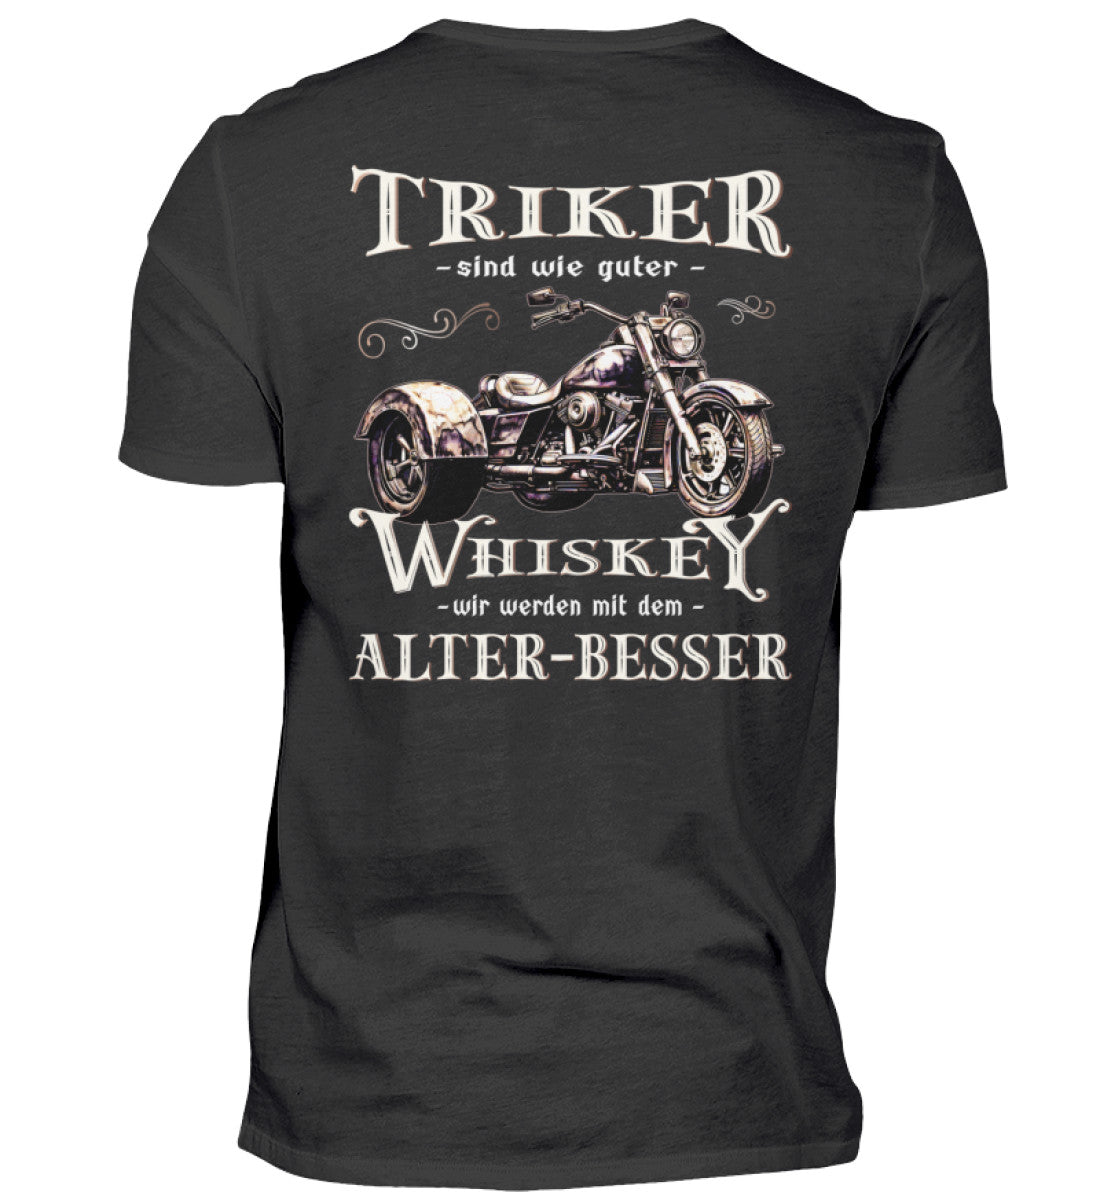 Ein T-Shirt für Trike Fahrer von Wingbikers mit dem Aufdruck, Triker sind wie guter Whiskey - Wir werden mit dem Alter besser, als Back Print, in schwarz.